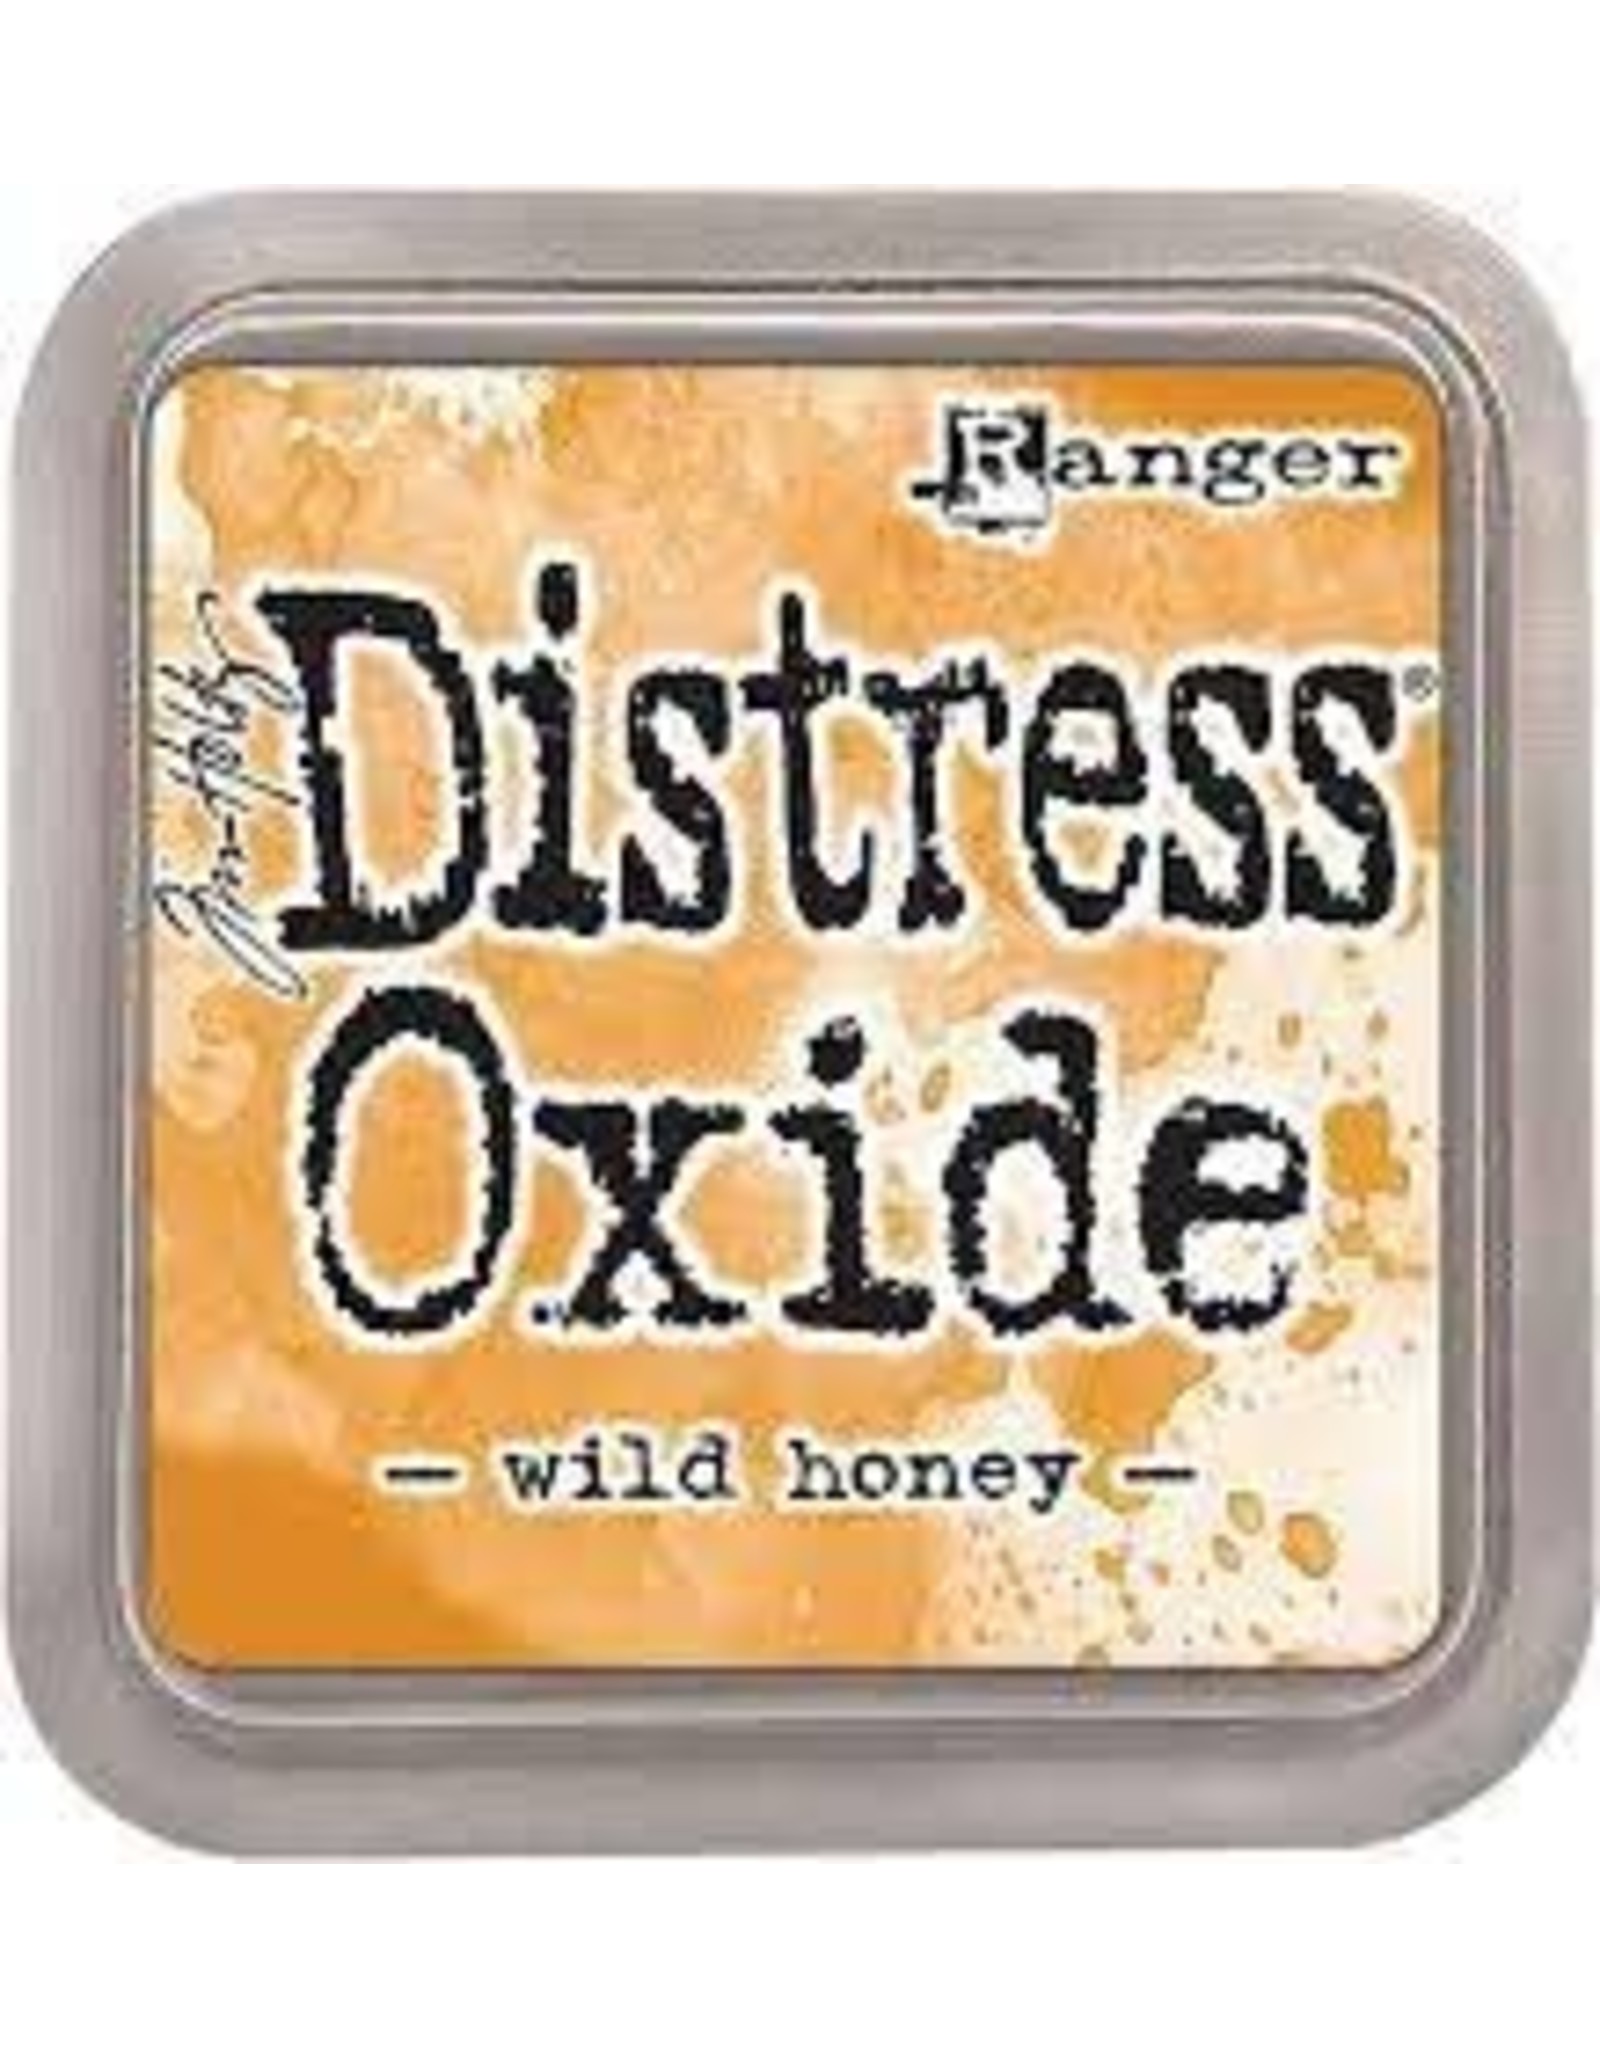 Tim Holtz - Ranger Distress Oxide Wild Honey